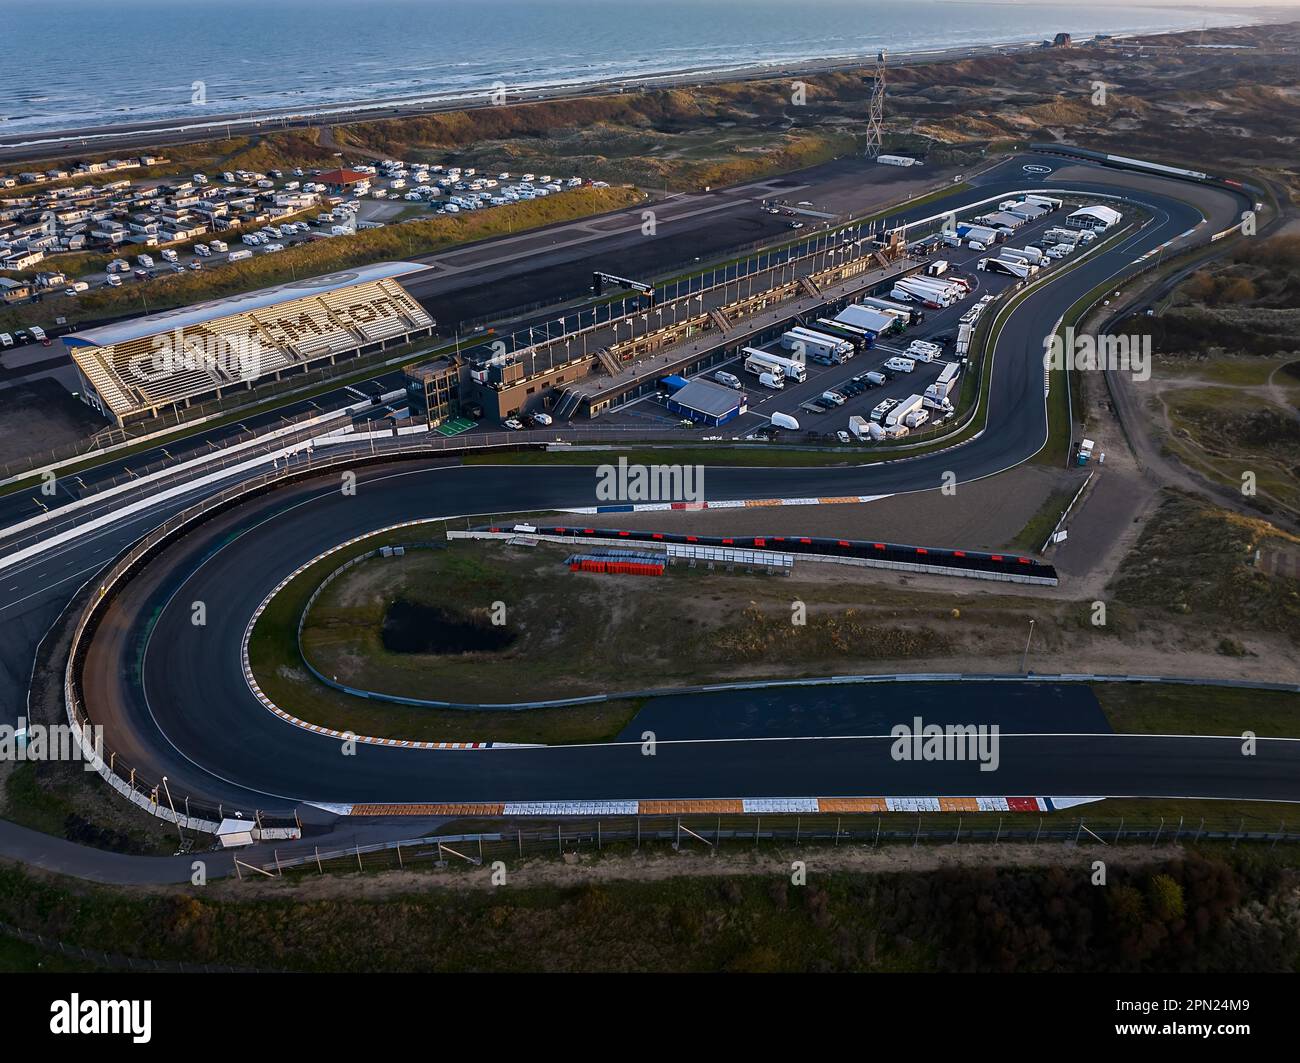 Der Circuit Zandvoort ist die Formel-1-Rennstrecke der Niederlande. Die F1. Meisterschaft findet jedes Jahr im august statt. Dies ist eines der eurpoeanischen Forma Stockfoto